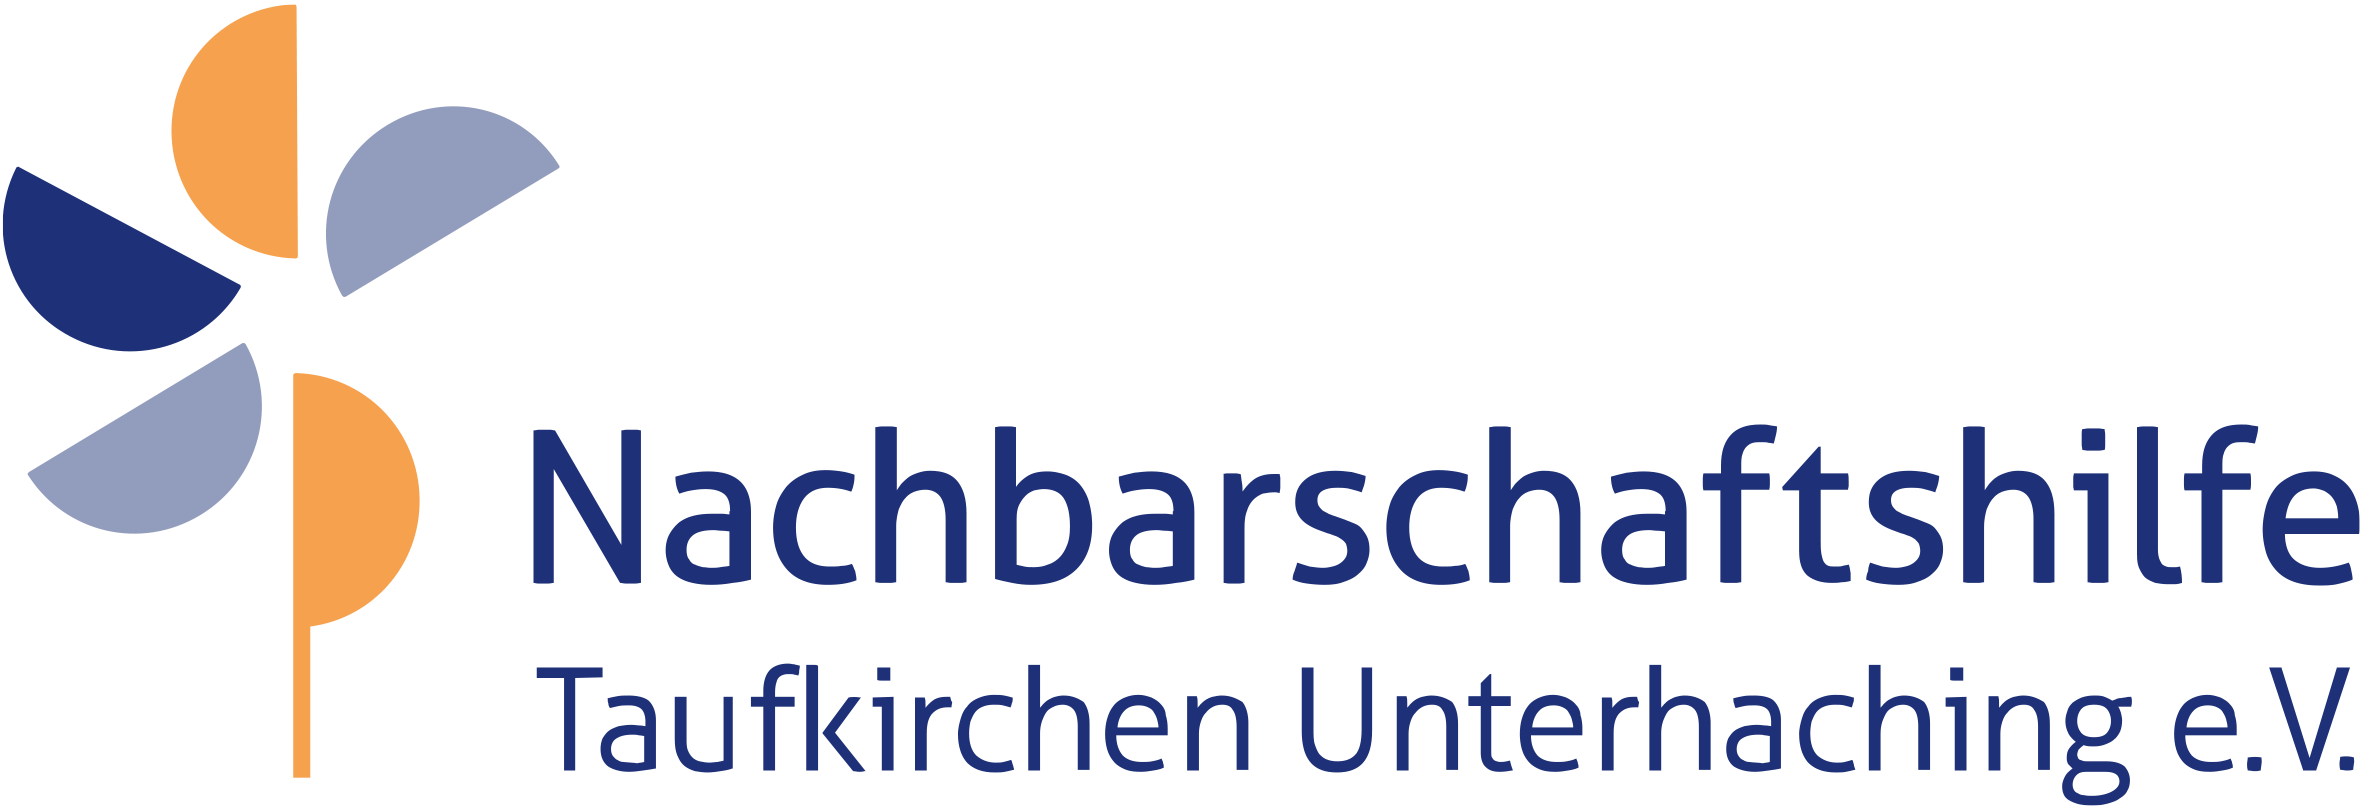 Nachbarschaftshilfe Taufkirchen Unterhaching - Aktuelles